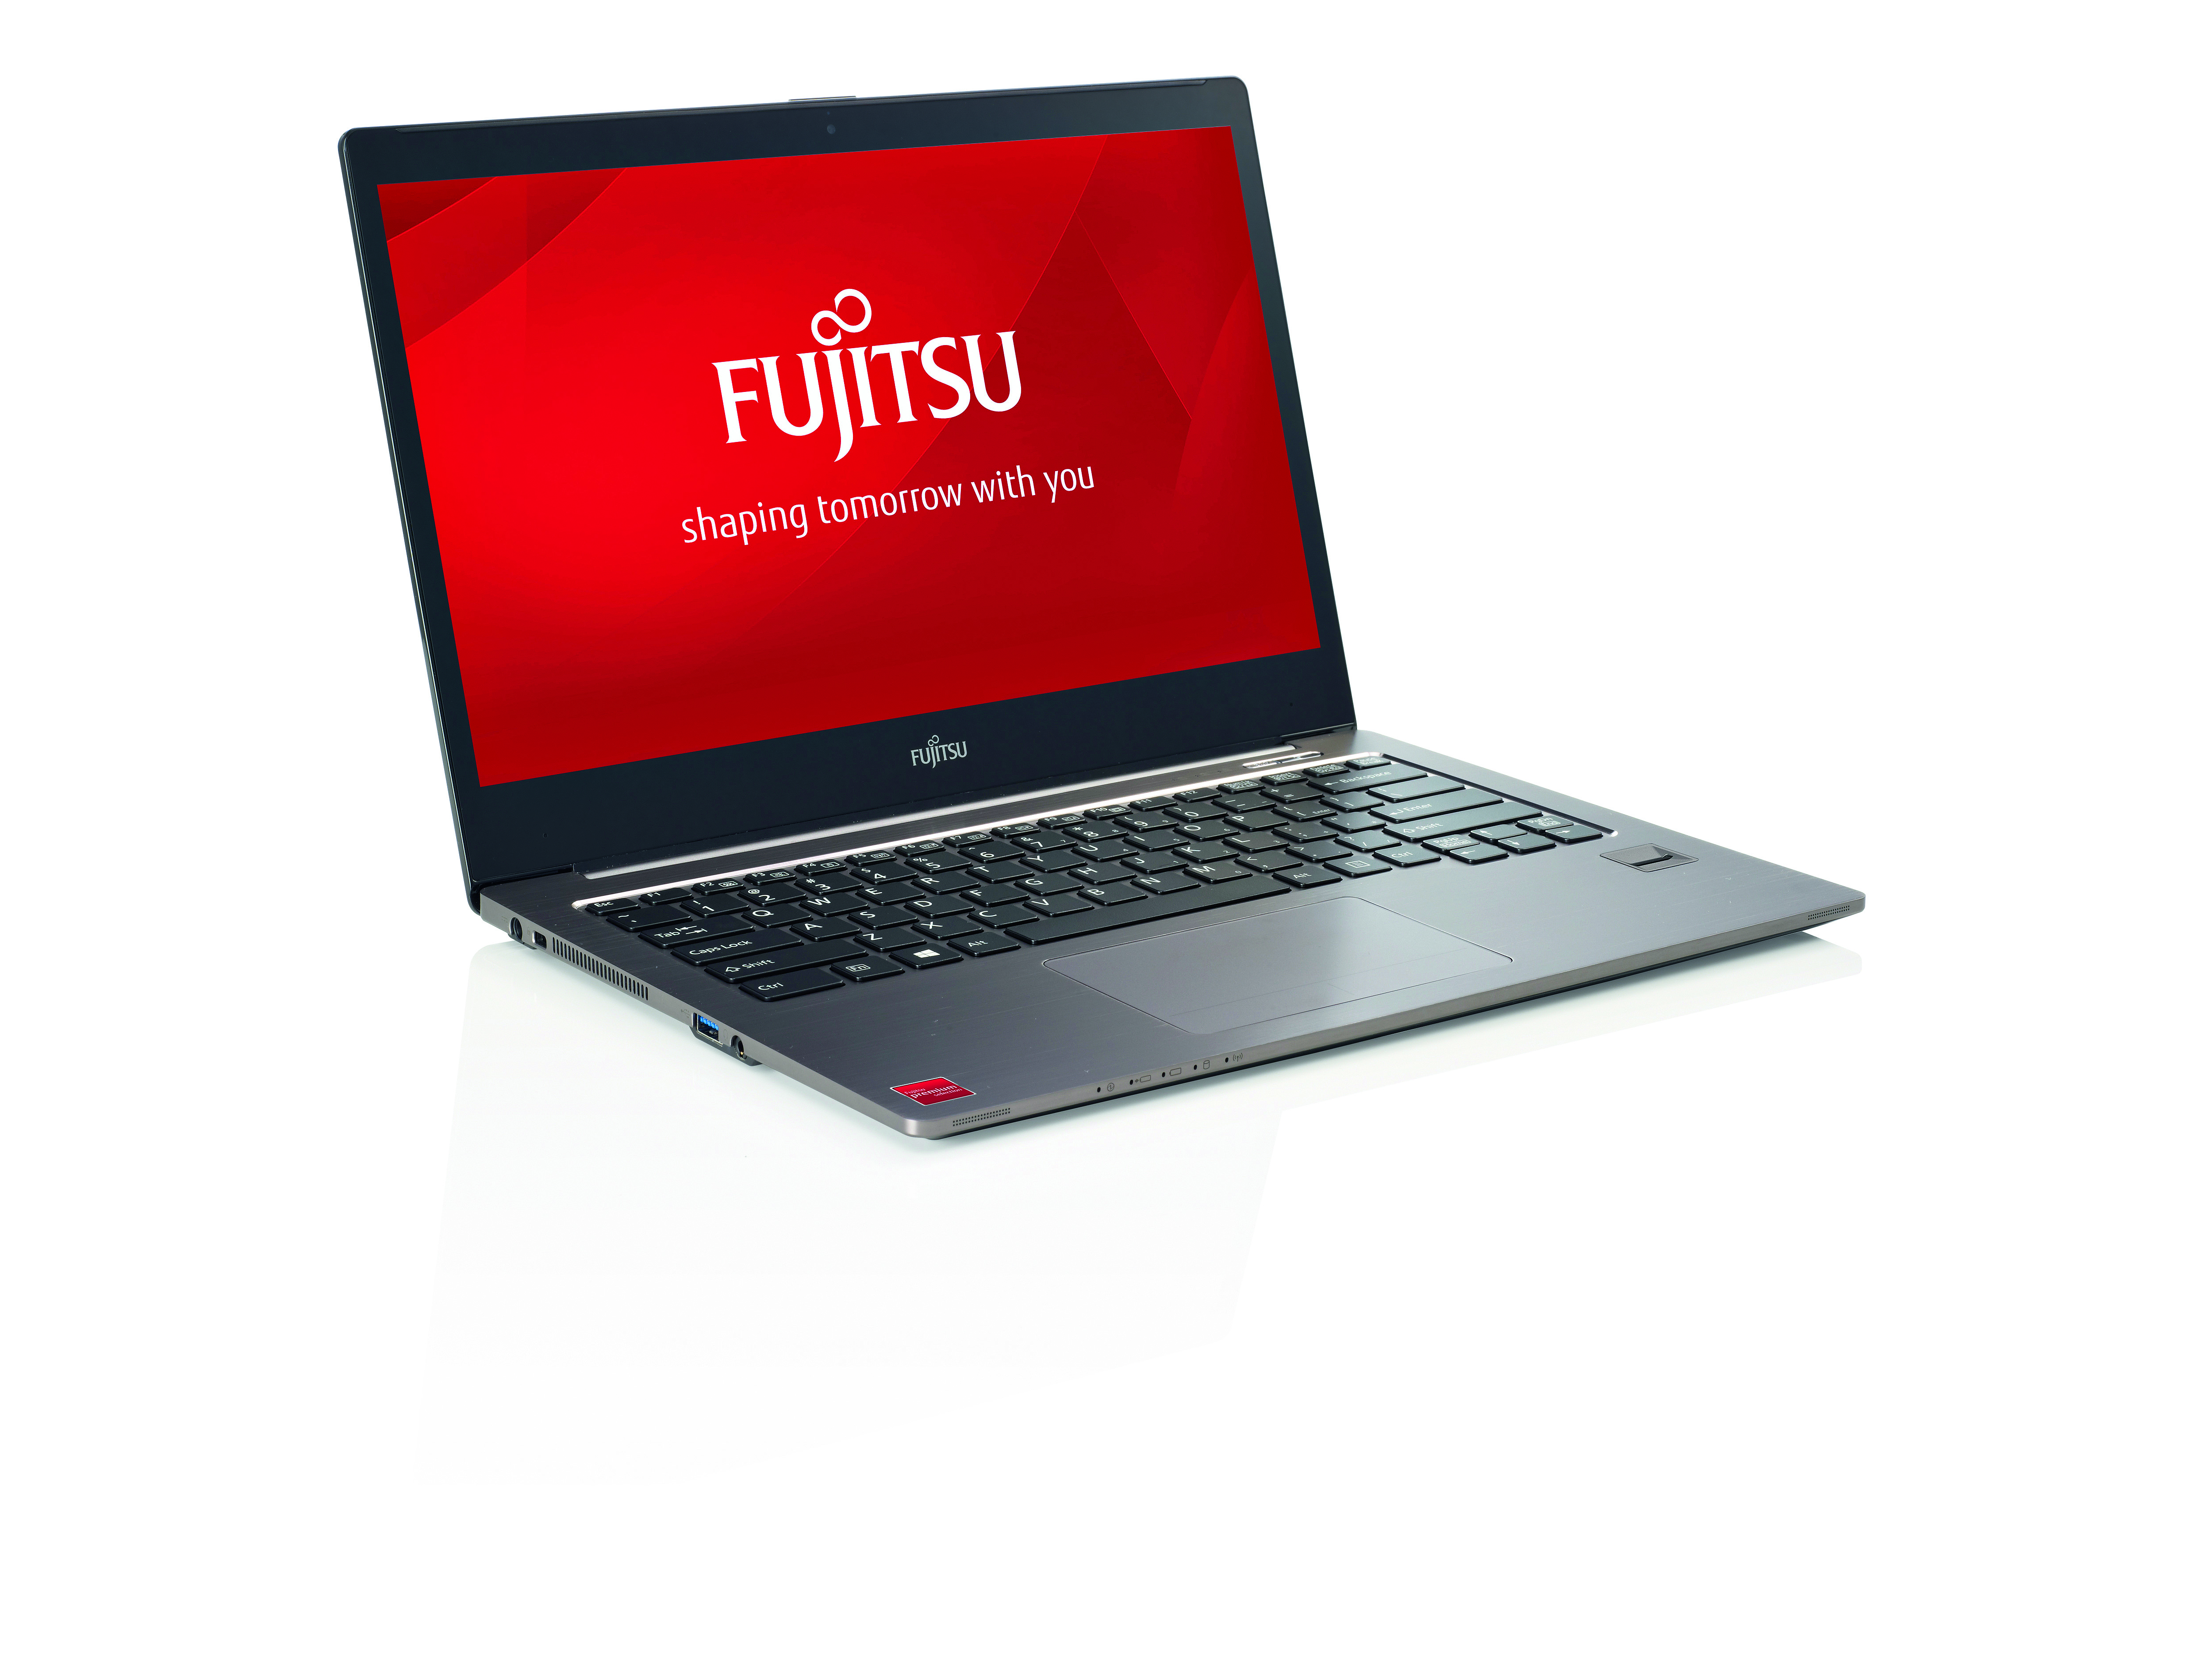 Fujitsu odcina dział PC